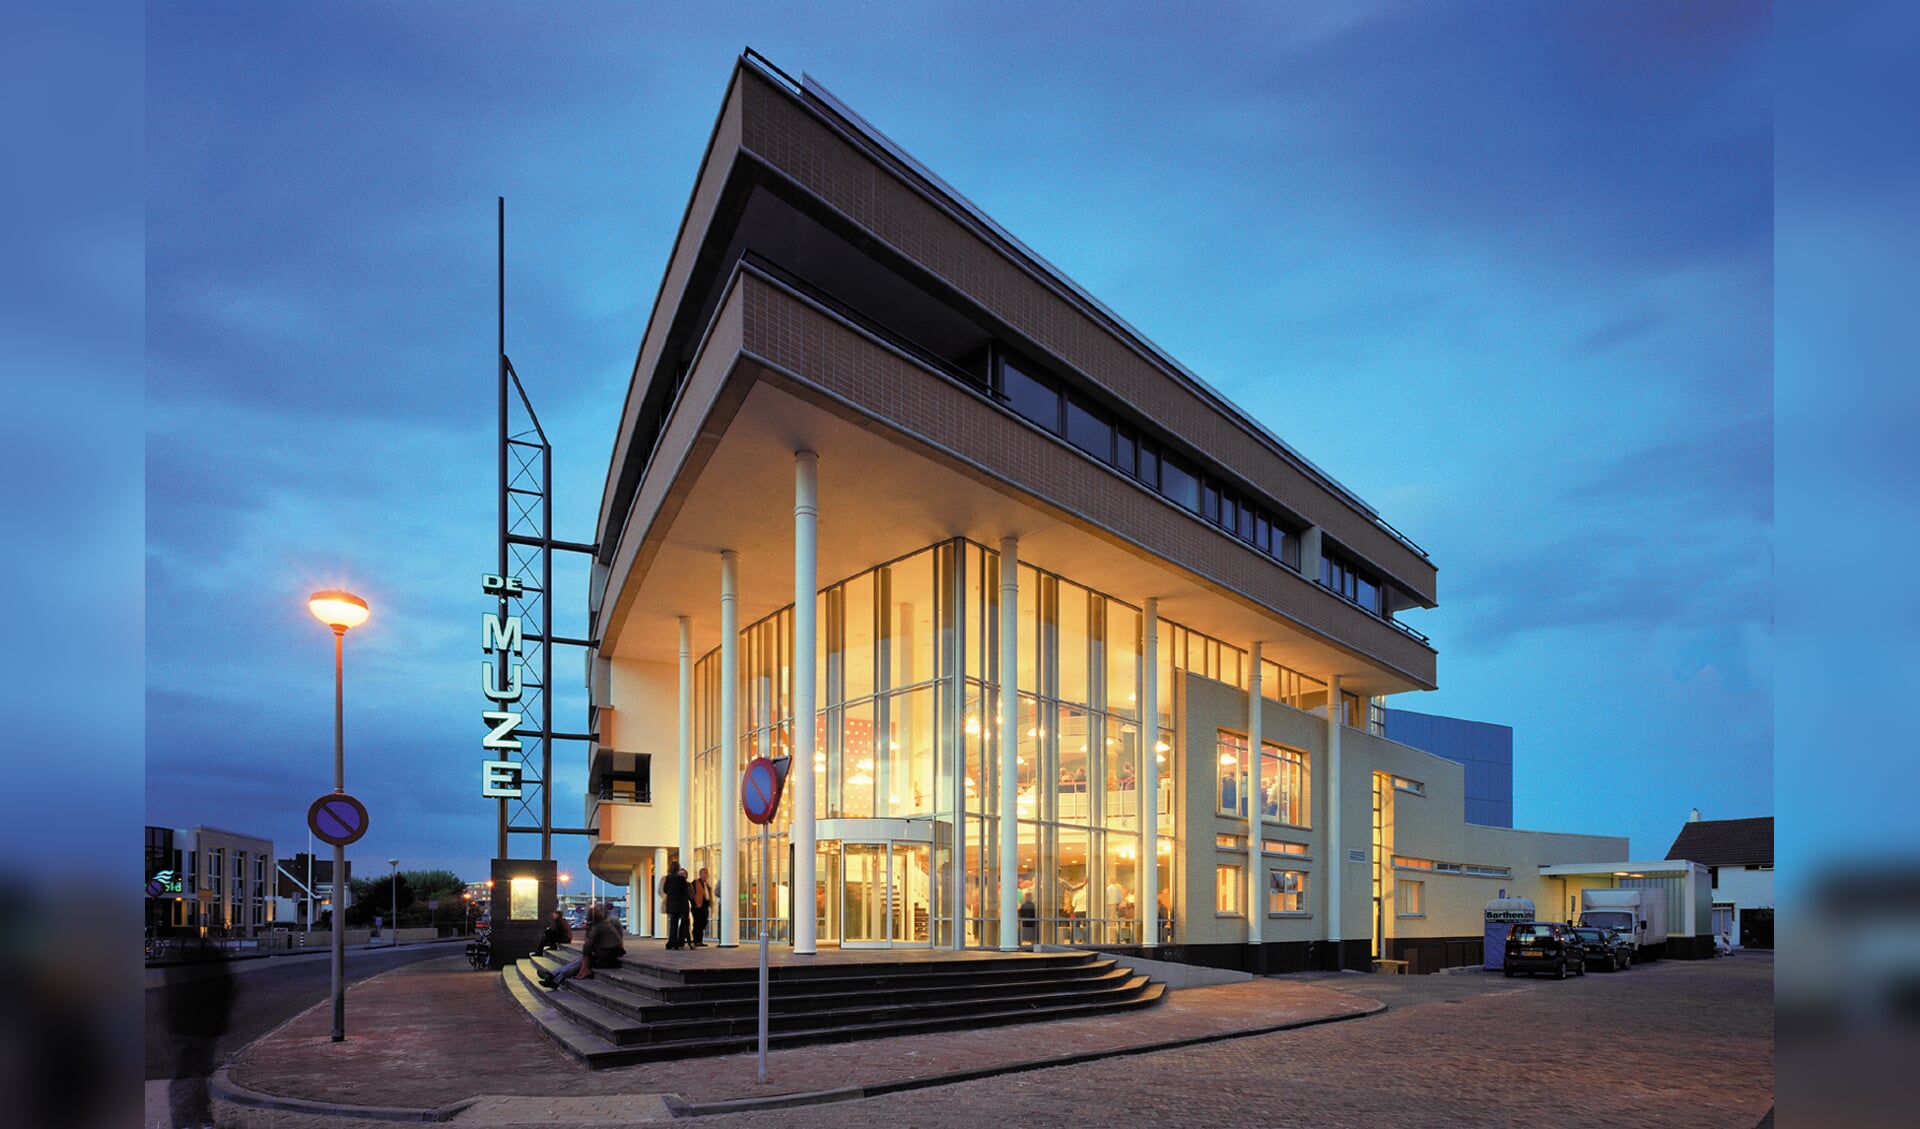 De Muze staat hoog genoteerd bi de meest gastvrije theaters van Nederland. | Foto: PR